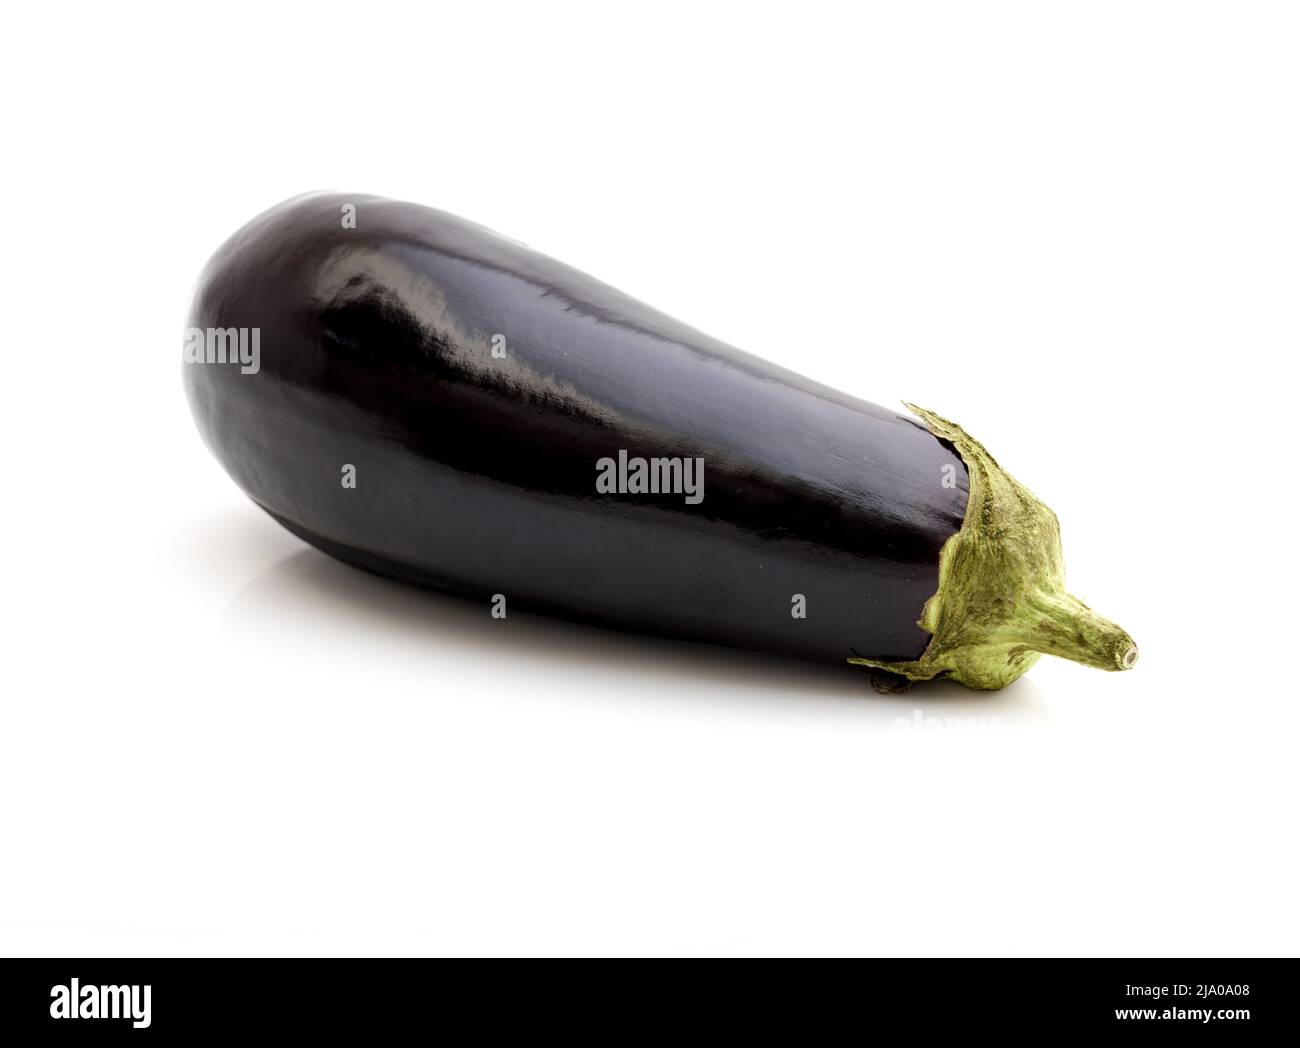 aubergine or eggplant isolated on white background Stock Photo